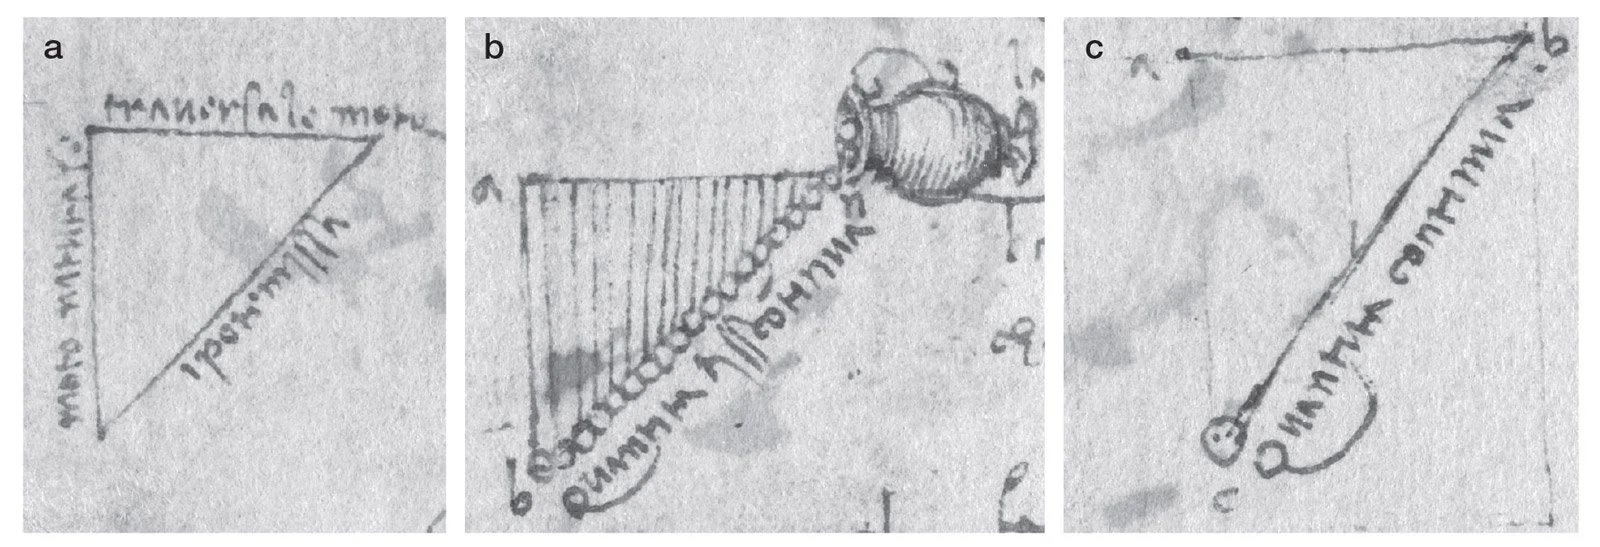 Los bocetos perdidos de Leonardo sugieren que teorizó sobre la gravedad antes que Galileo y Newton